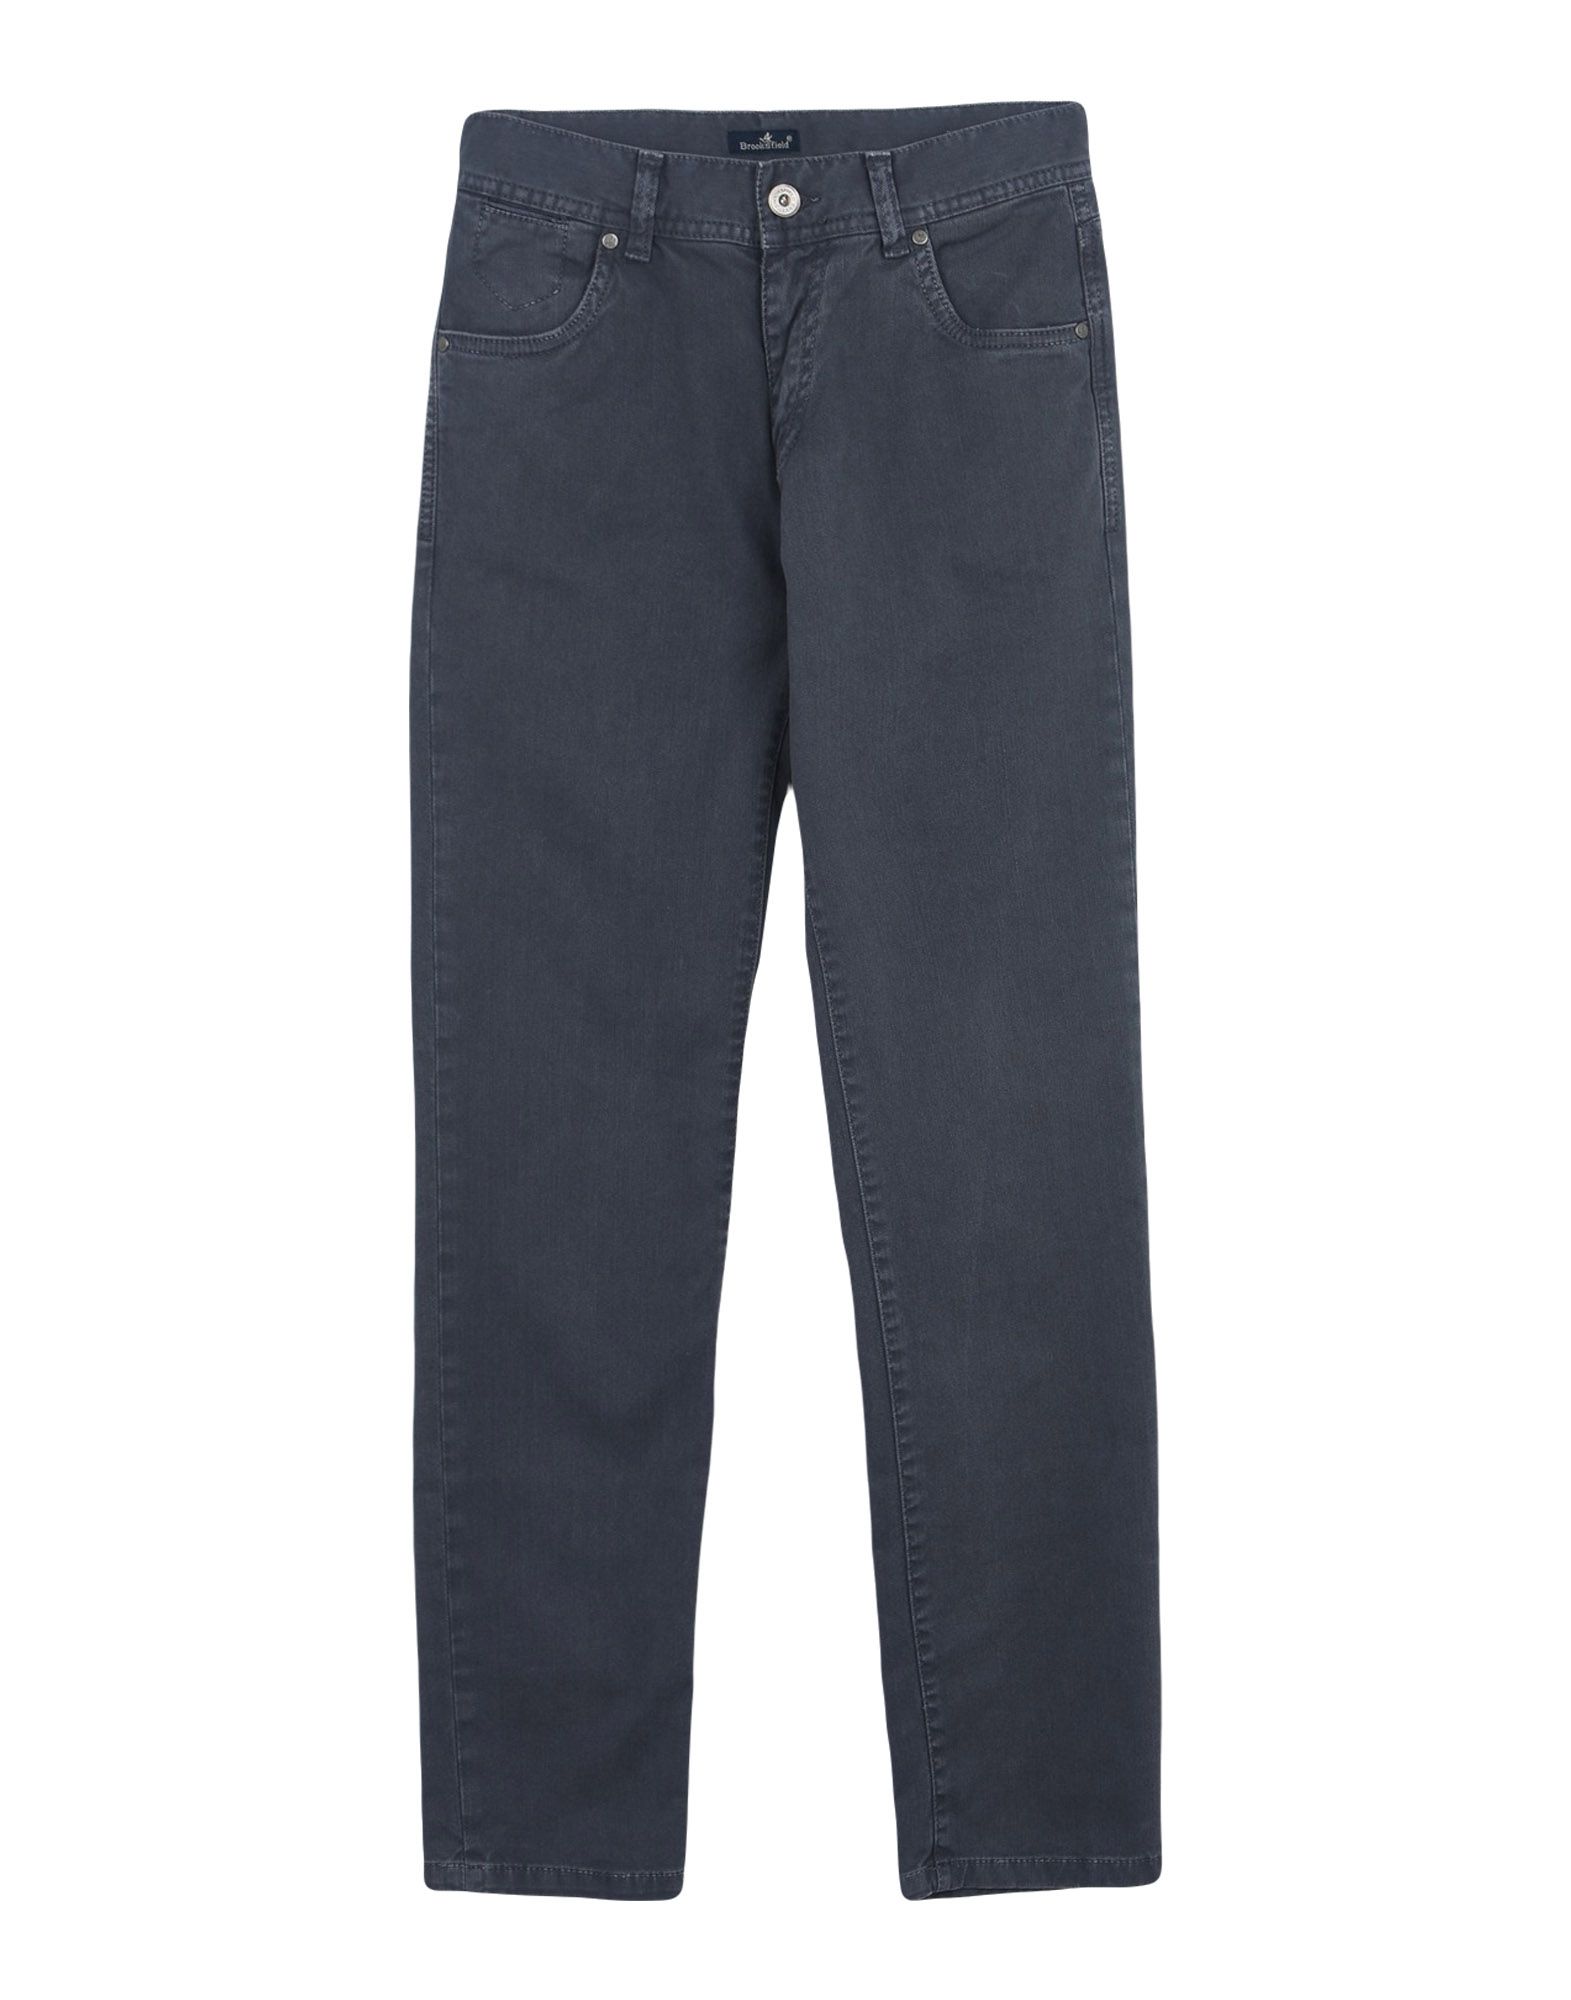 Brooksfield Kids' Jeans In Grey